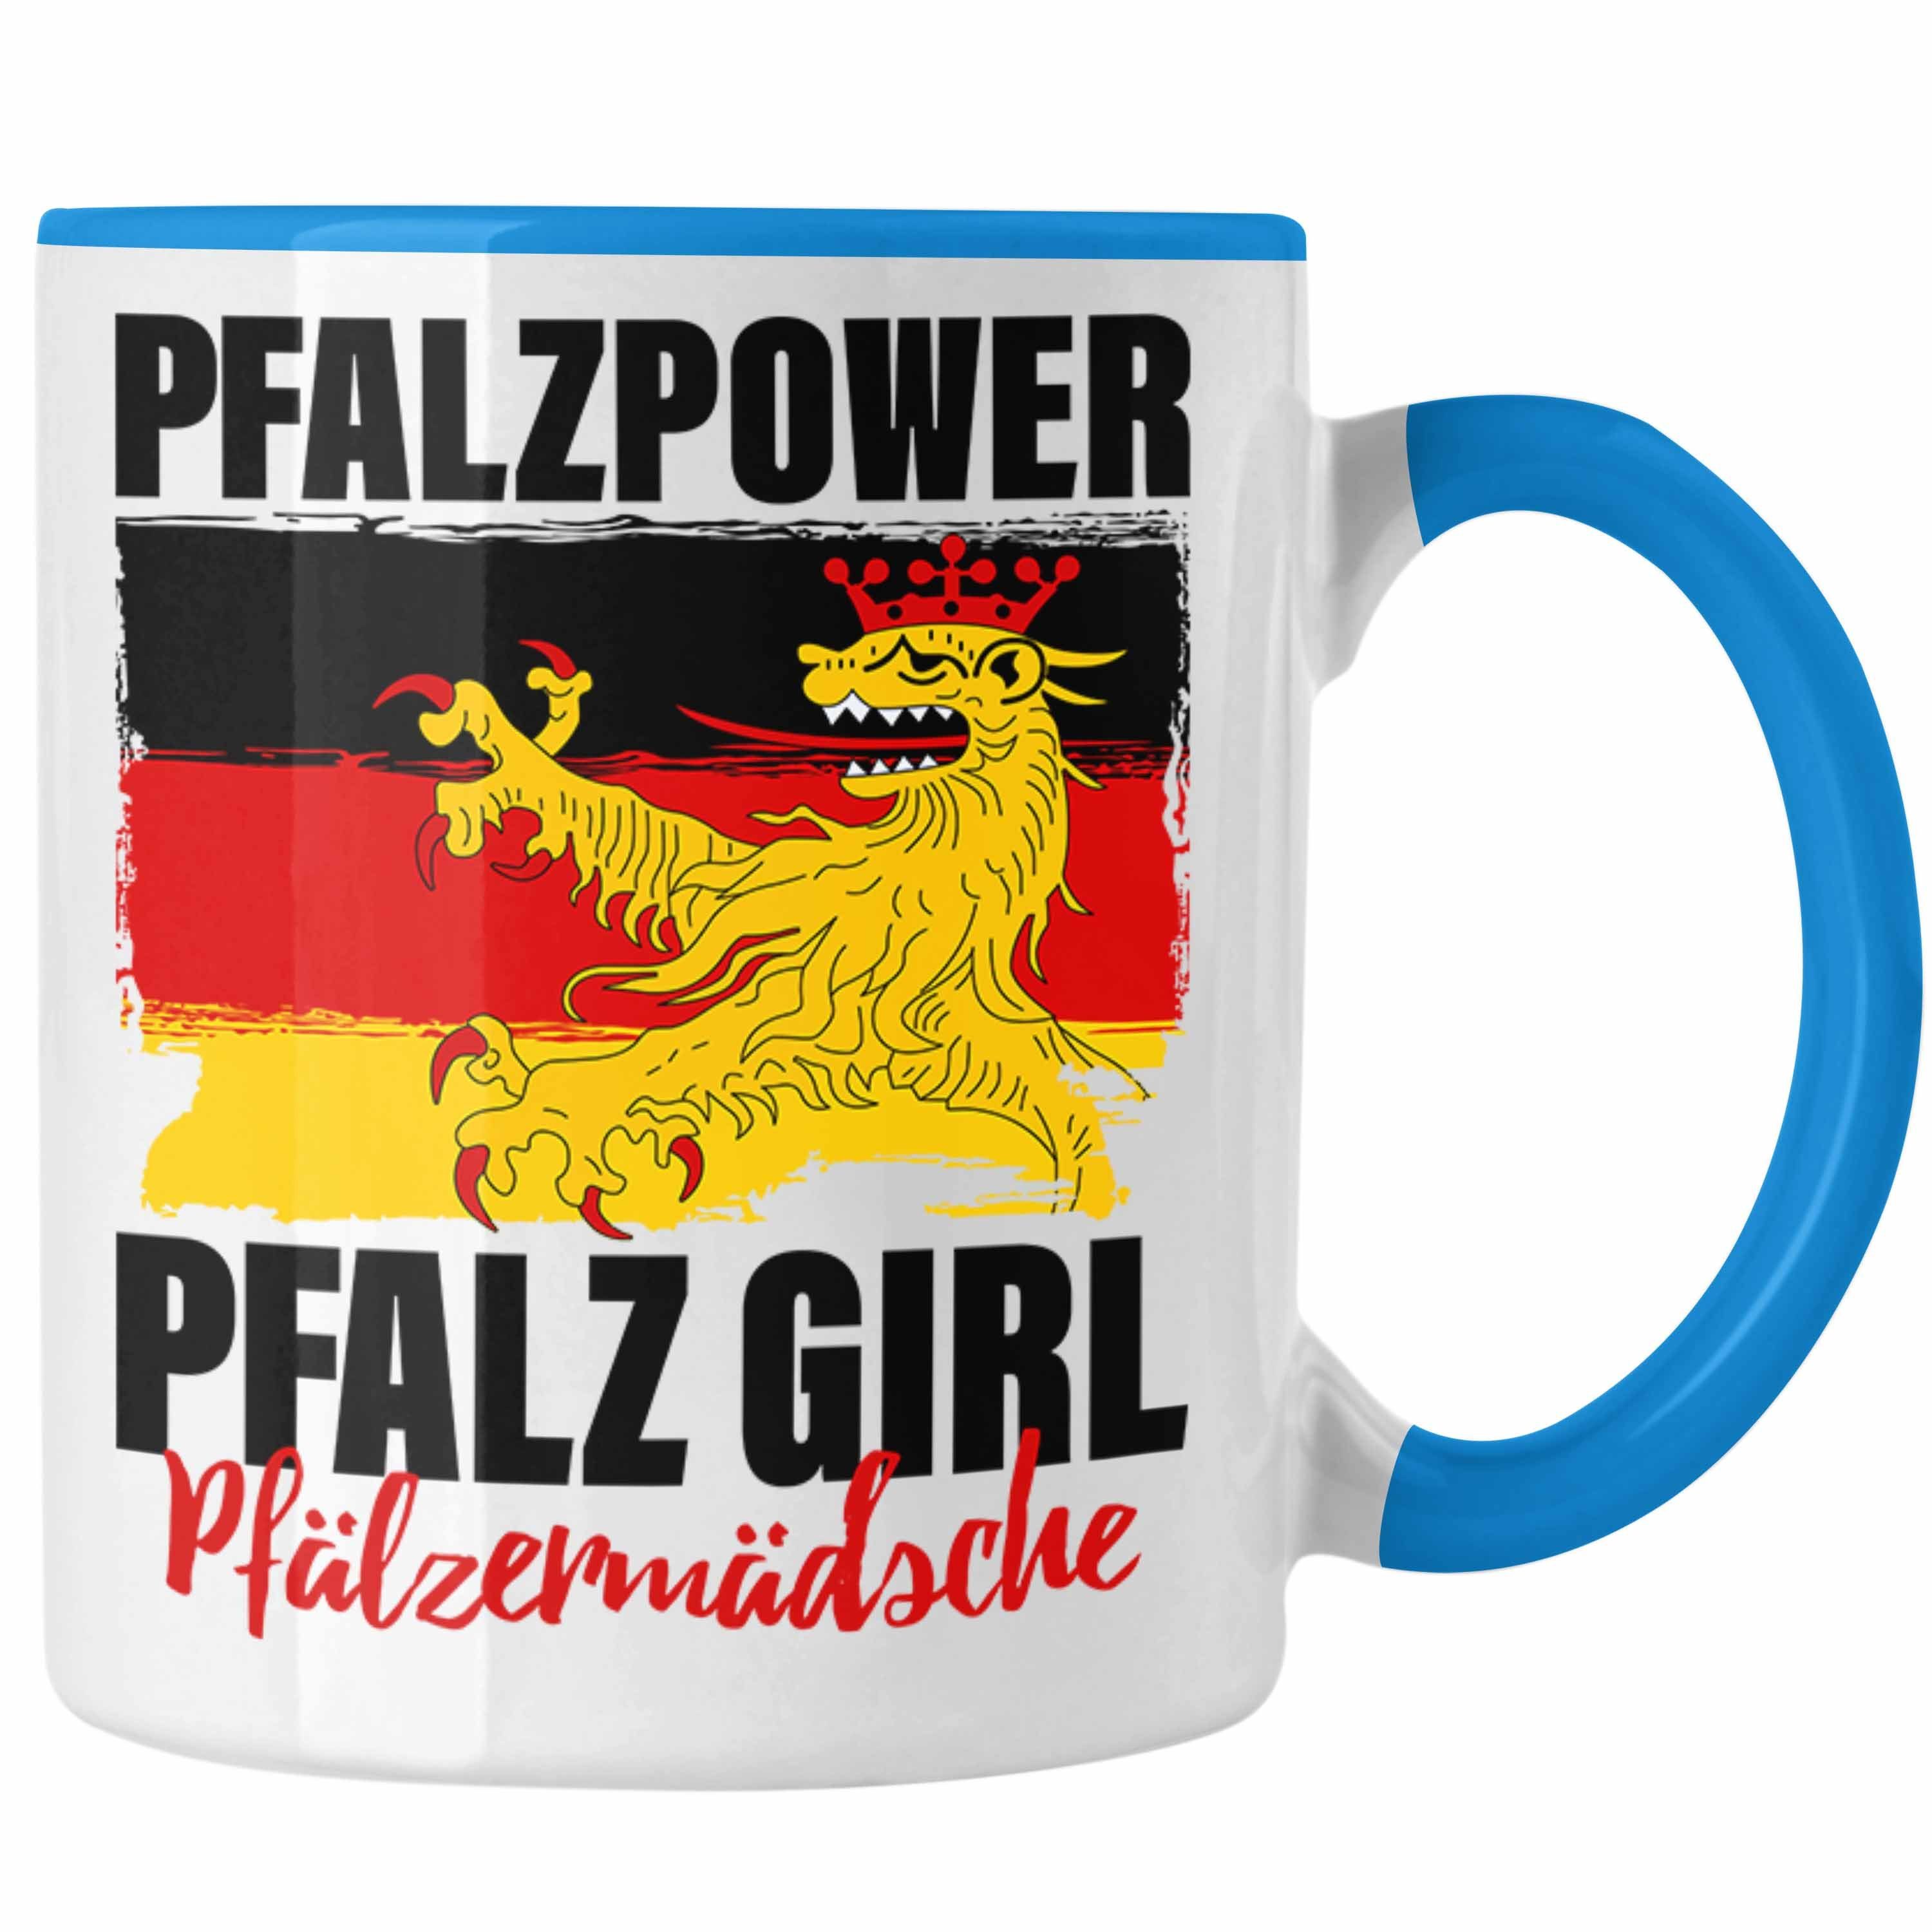 Trendation Tasse Pfalzpower Tasse Geschenk Frauen Pfalz Girl Pfalzmädsche Blau